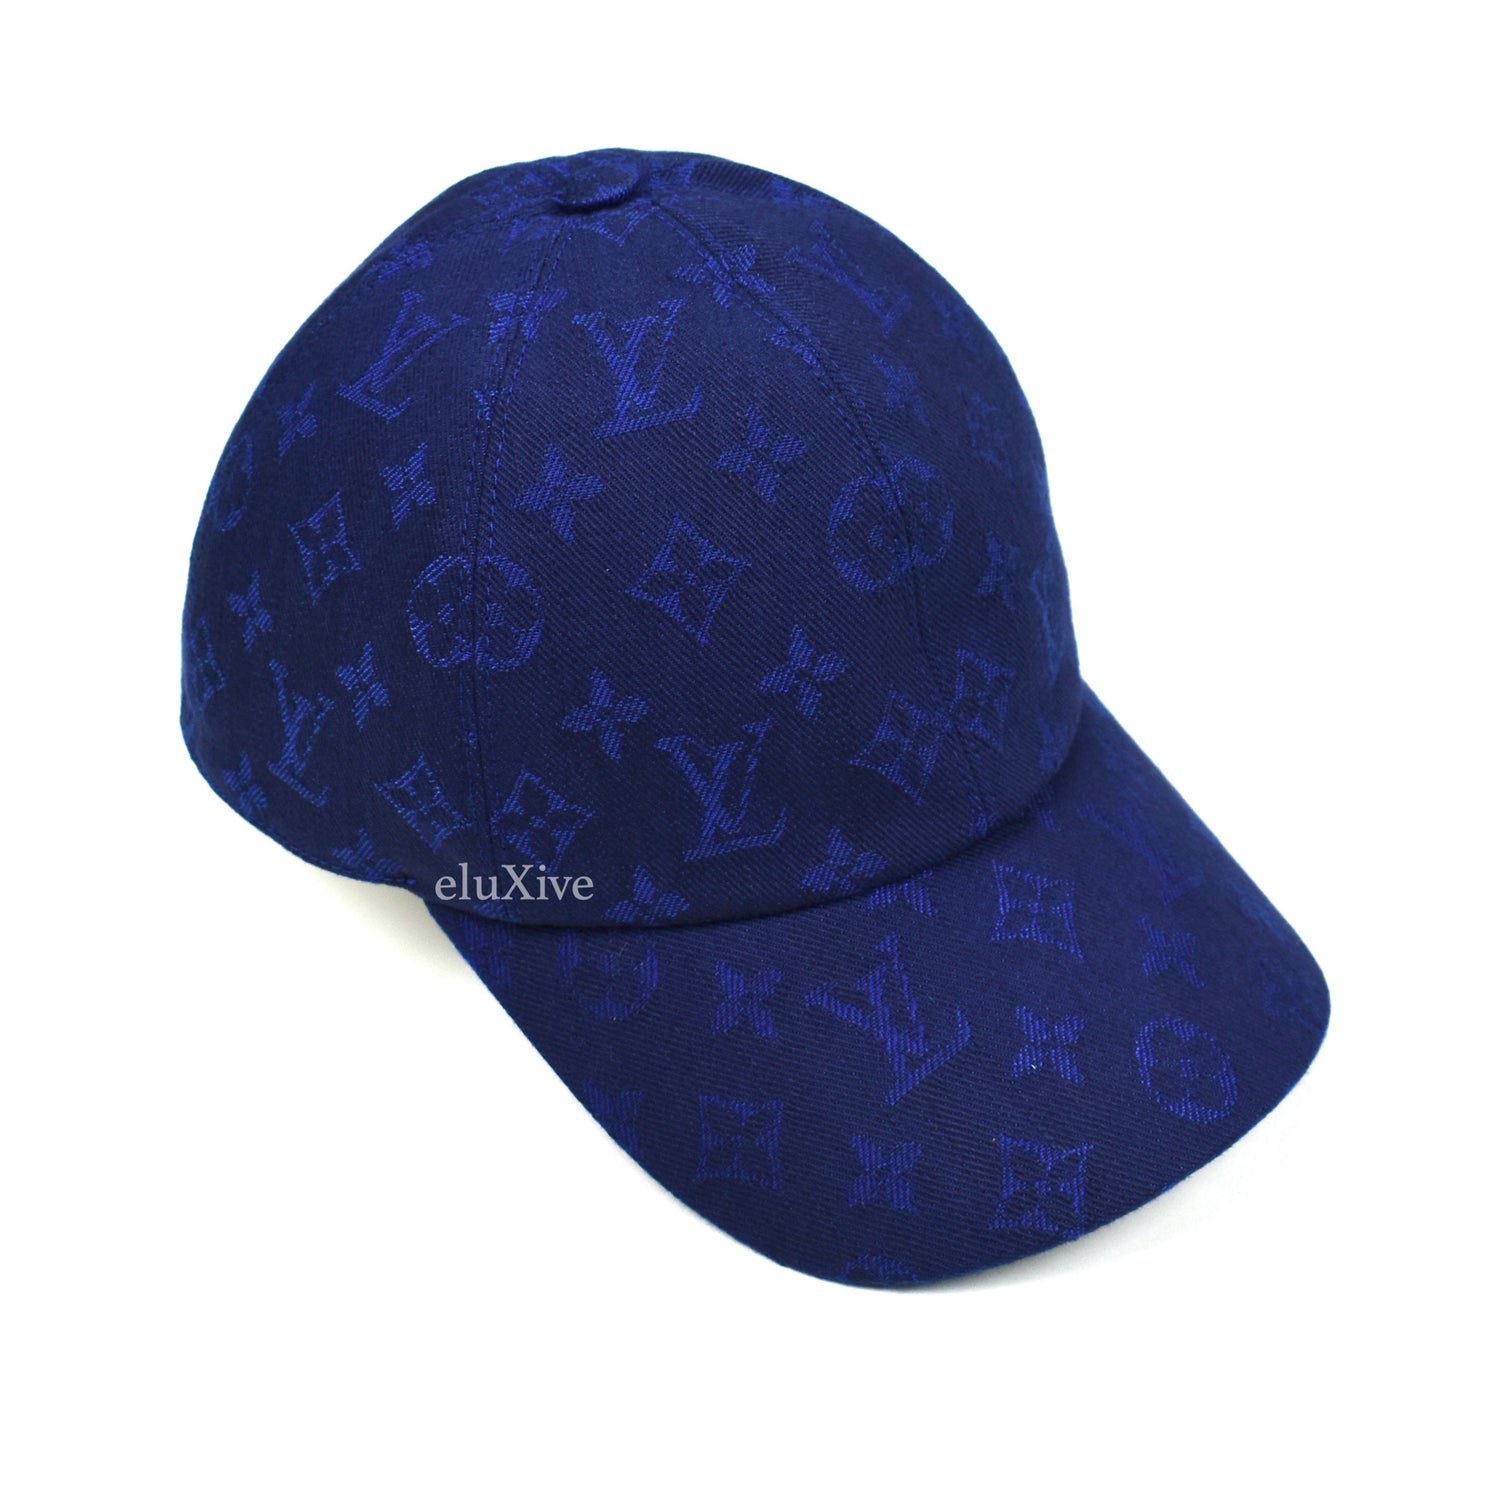 Louis Vuitton Monogram Denim Bob Hat Medium